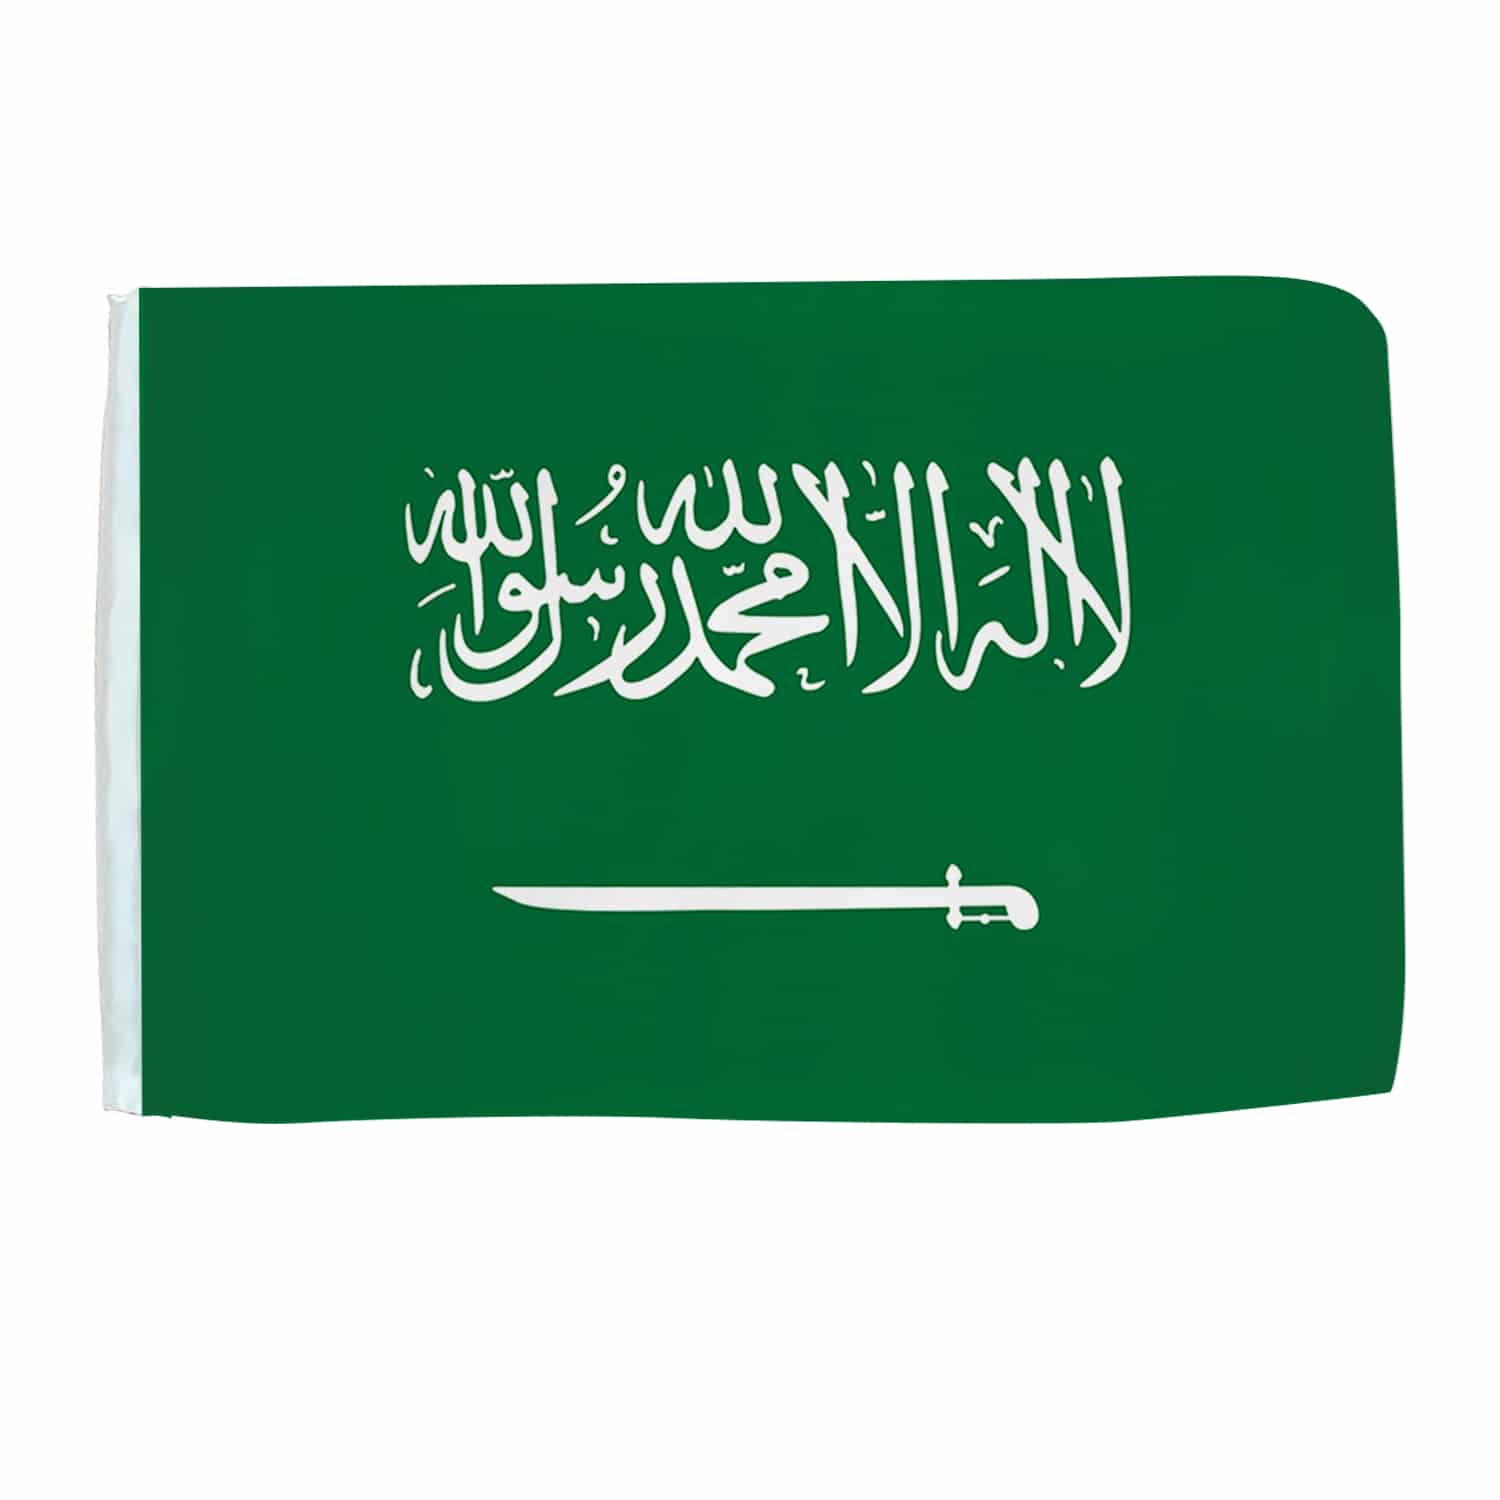 Seidenfahne Saudi Arabien, 90x150 cm